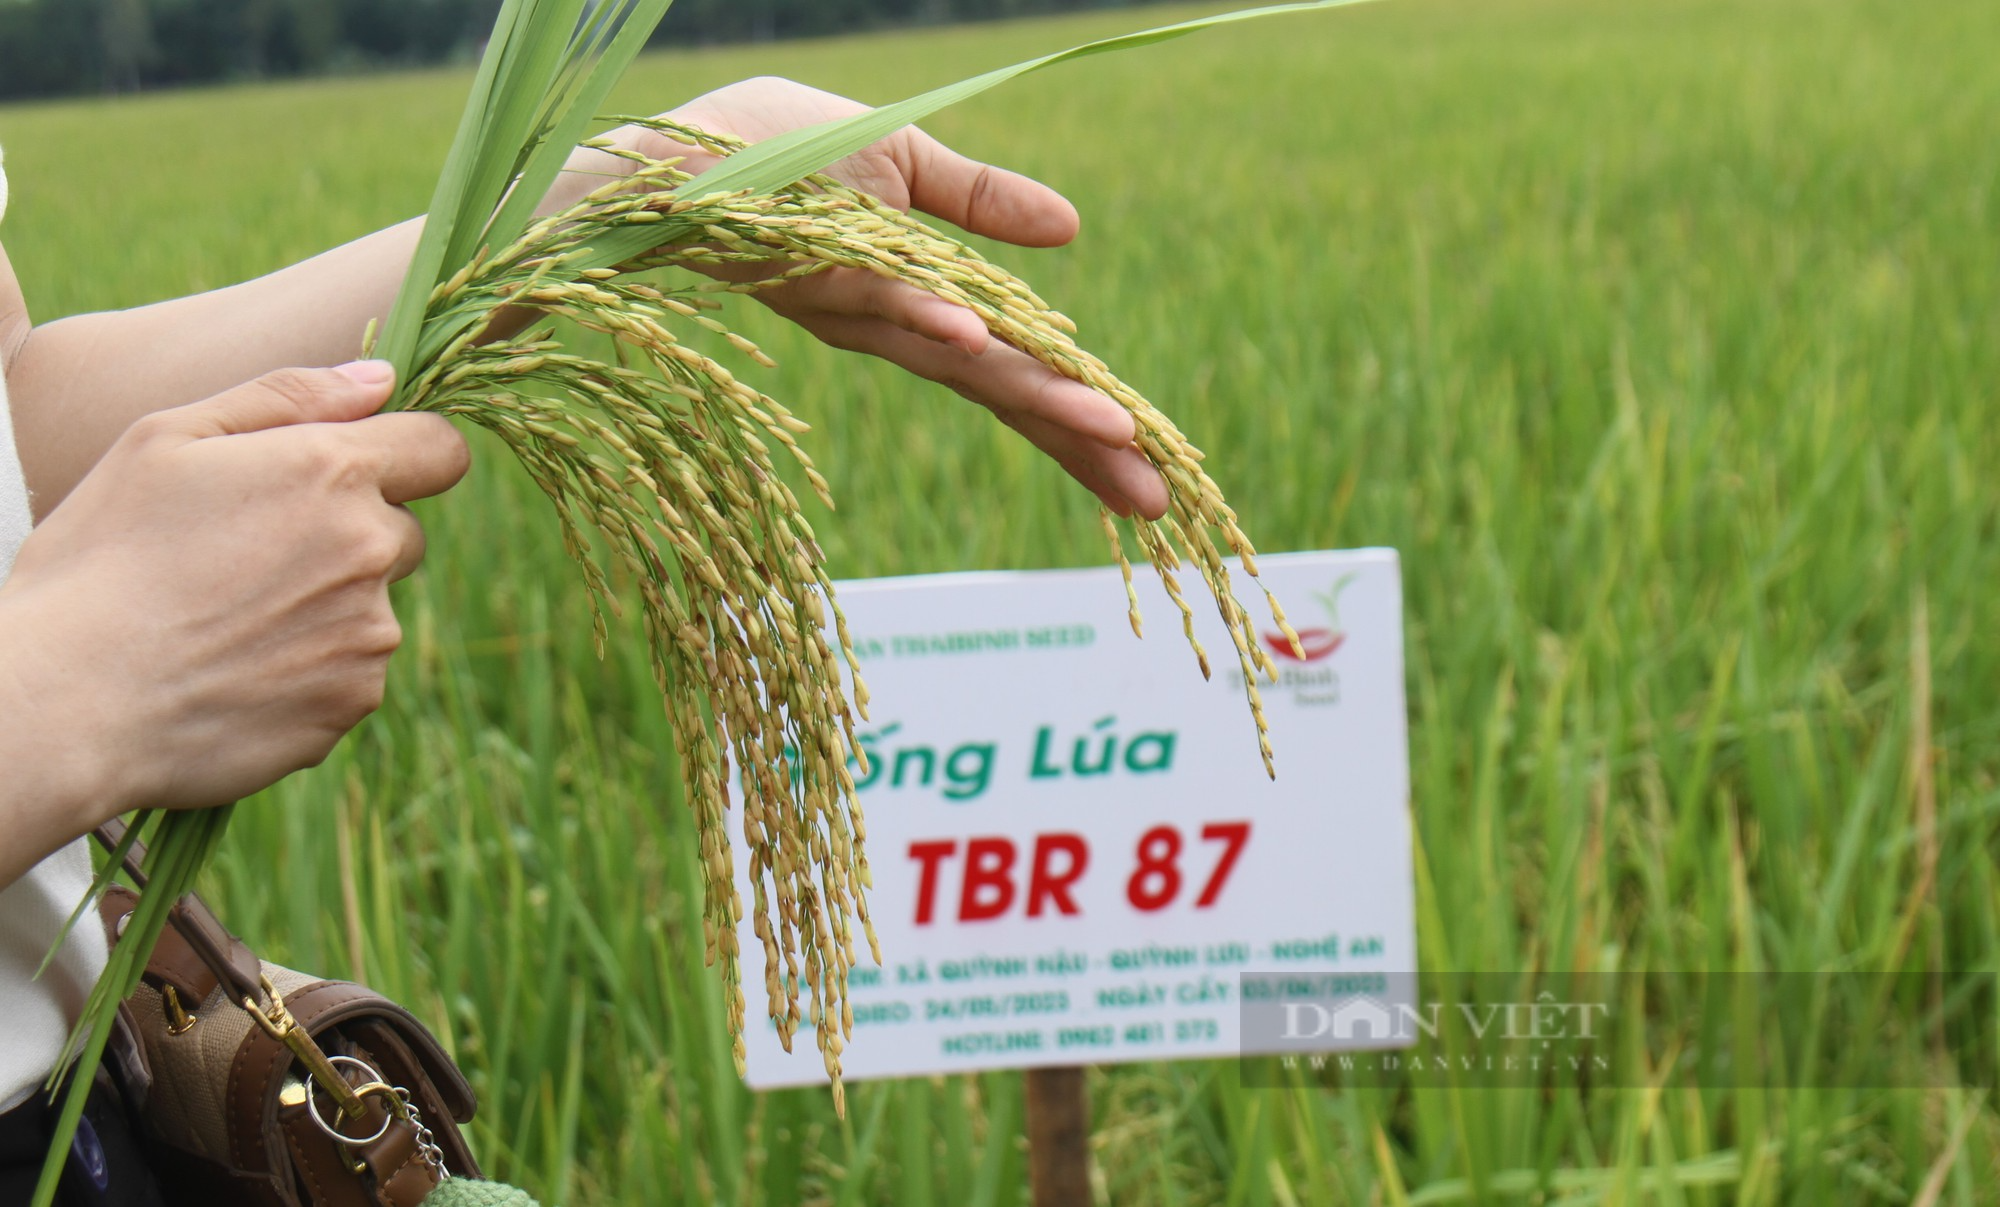 Bà con nông dân nơi này nô nức ra đồng ngắm những bông lúa TBR 87 dài, to, nặng trĩu của ThaiBinh Seed - Ảnh 6.